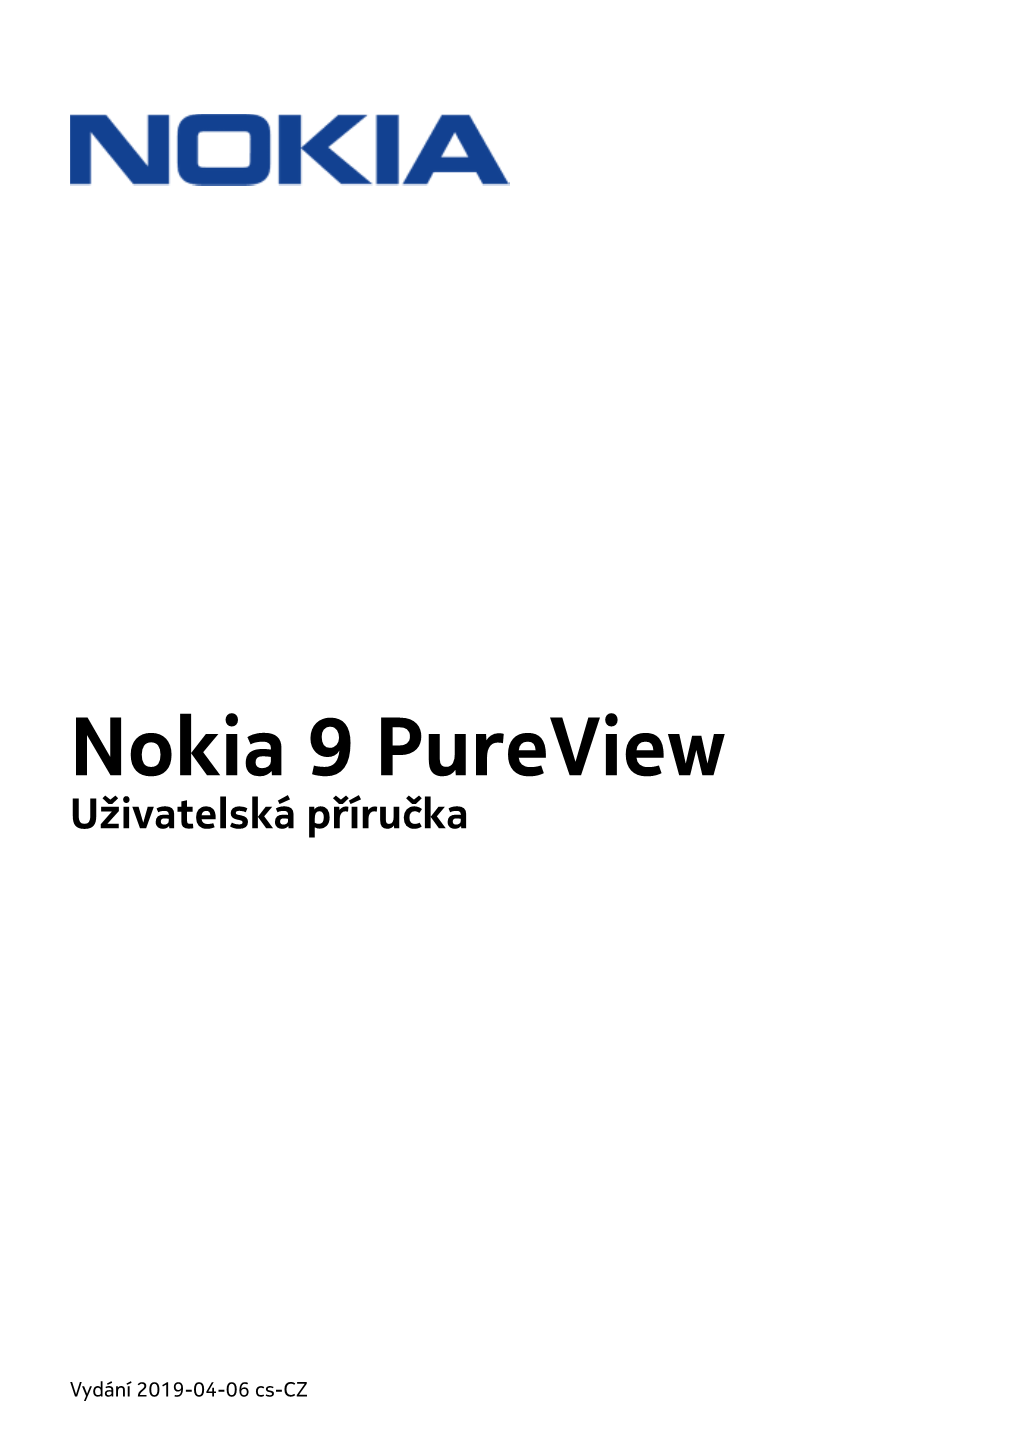 Nokia 9 Pureview Uživatelská Příručka Pdfdisplaydoctitle=True